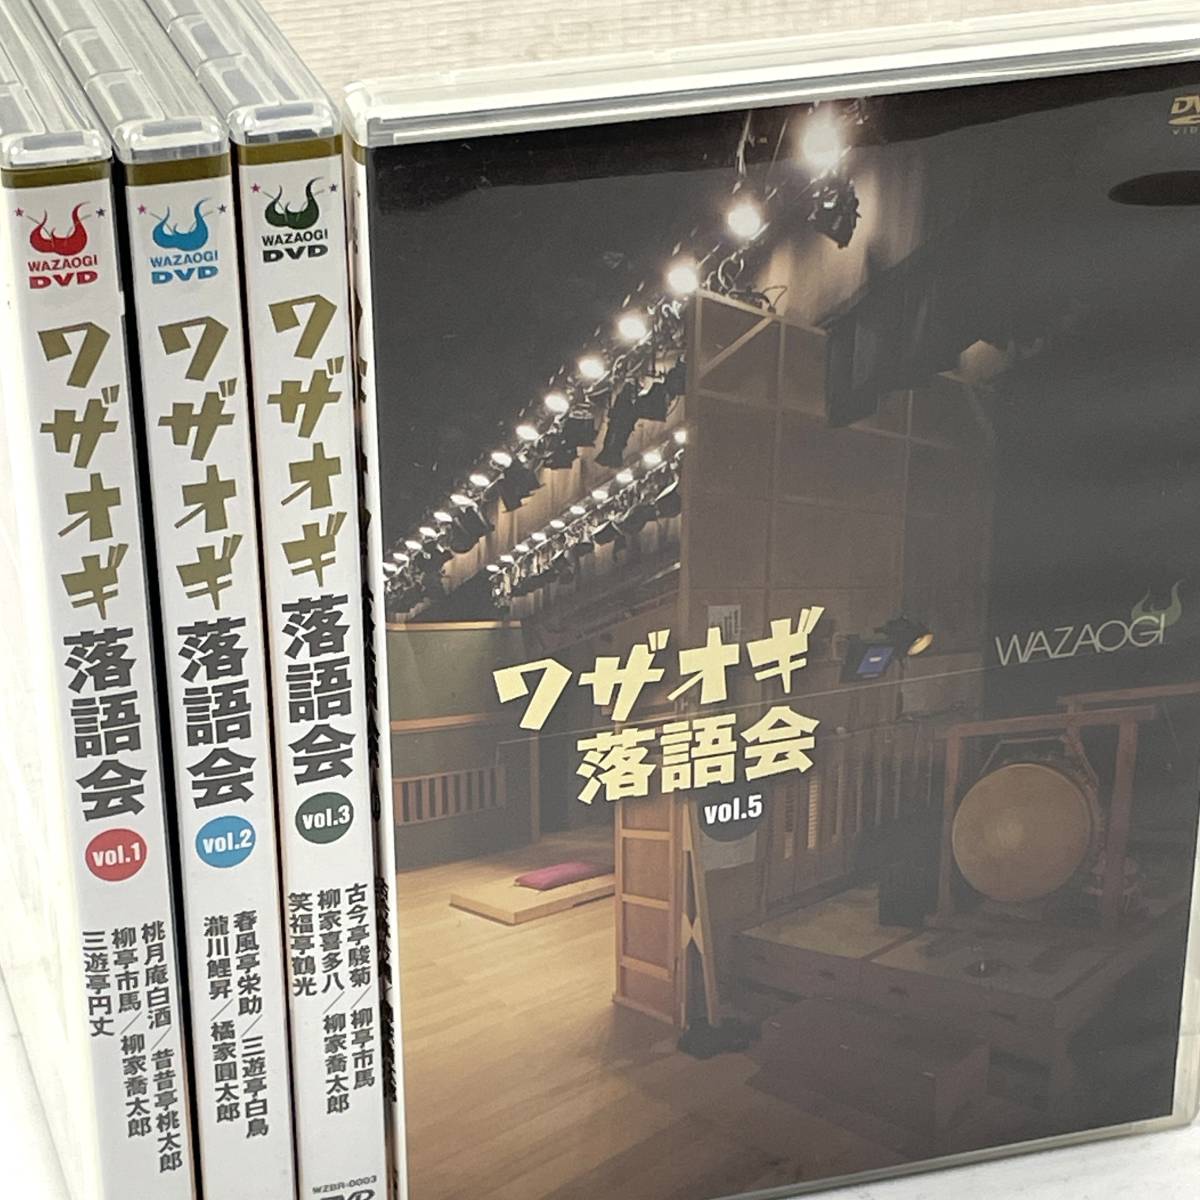 ワザオギ落語会 vol.1~3 vol.5 DVD4枚 北MZ2_画像1